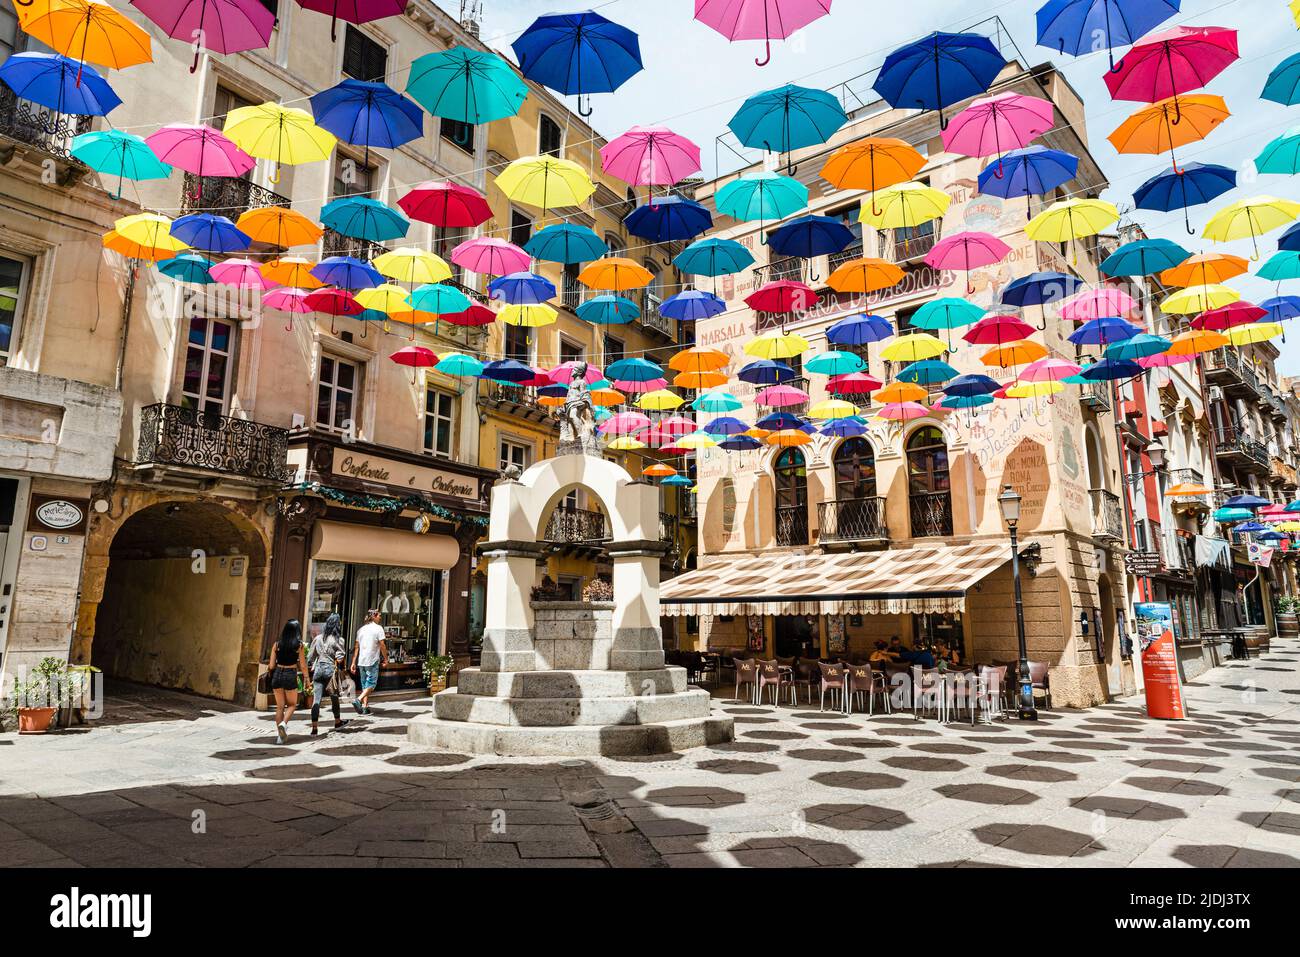 Las coloridas sombrillas protegen a los transeúntes en la Piazza Lamarmora, rodeada de casas históricas en el casco antiguo de Iglesias, en el suroeste de Cerdeña, Italia Foto de stock